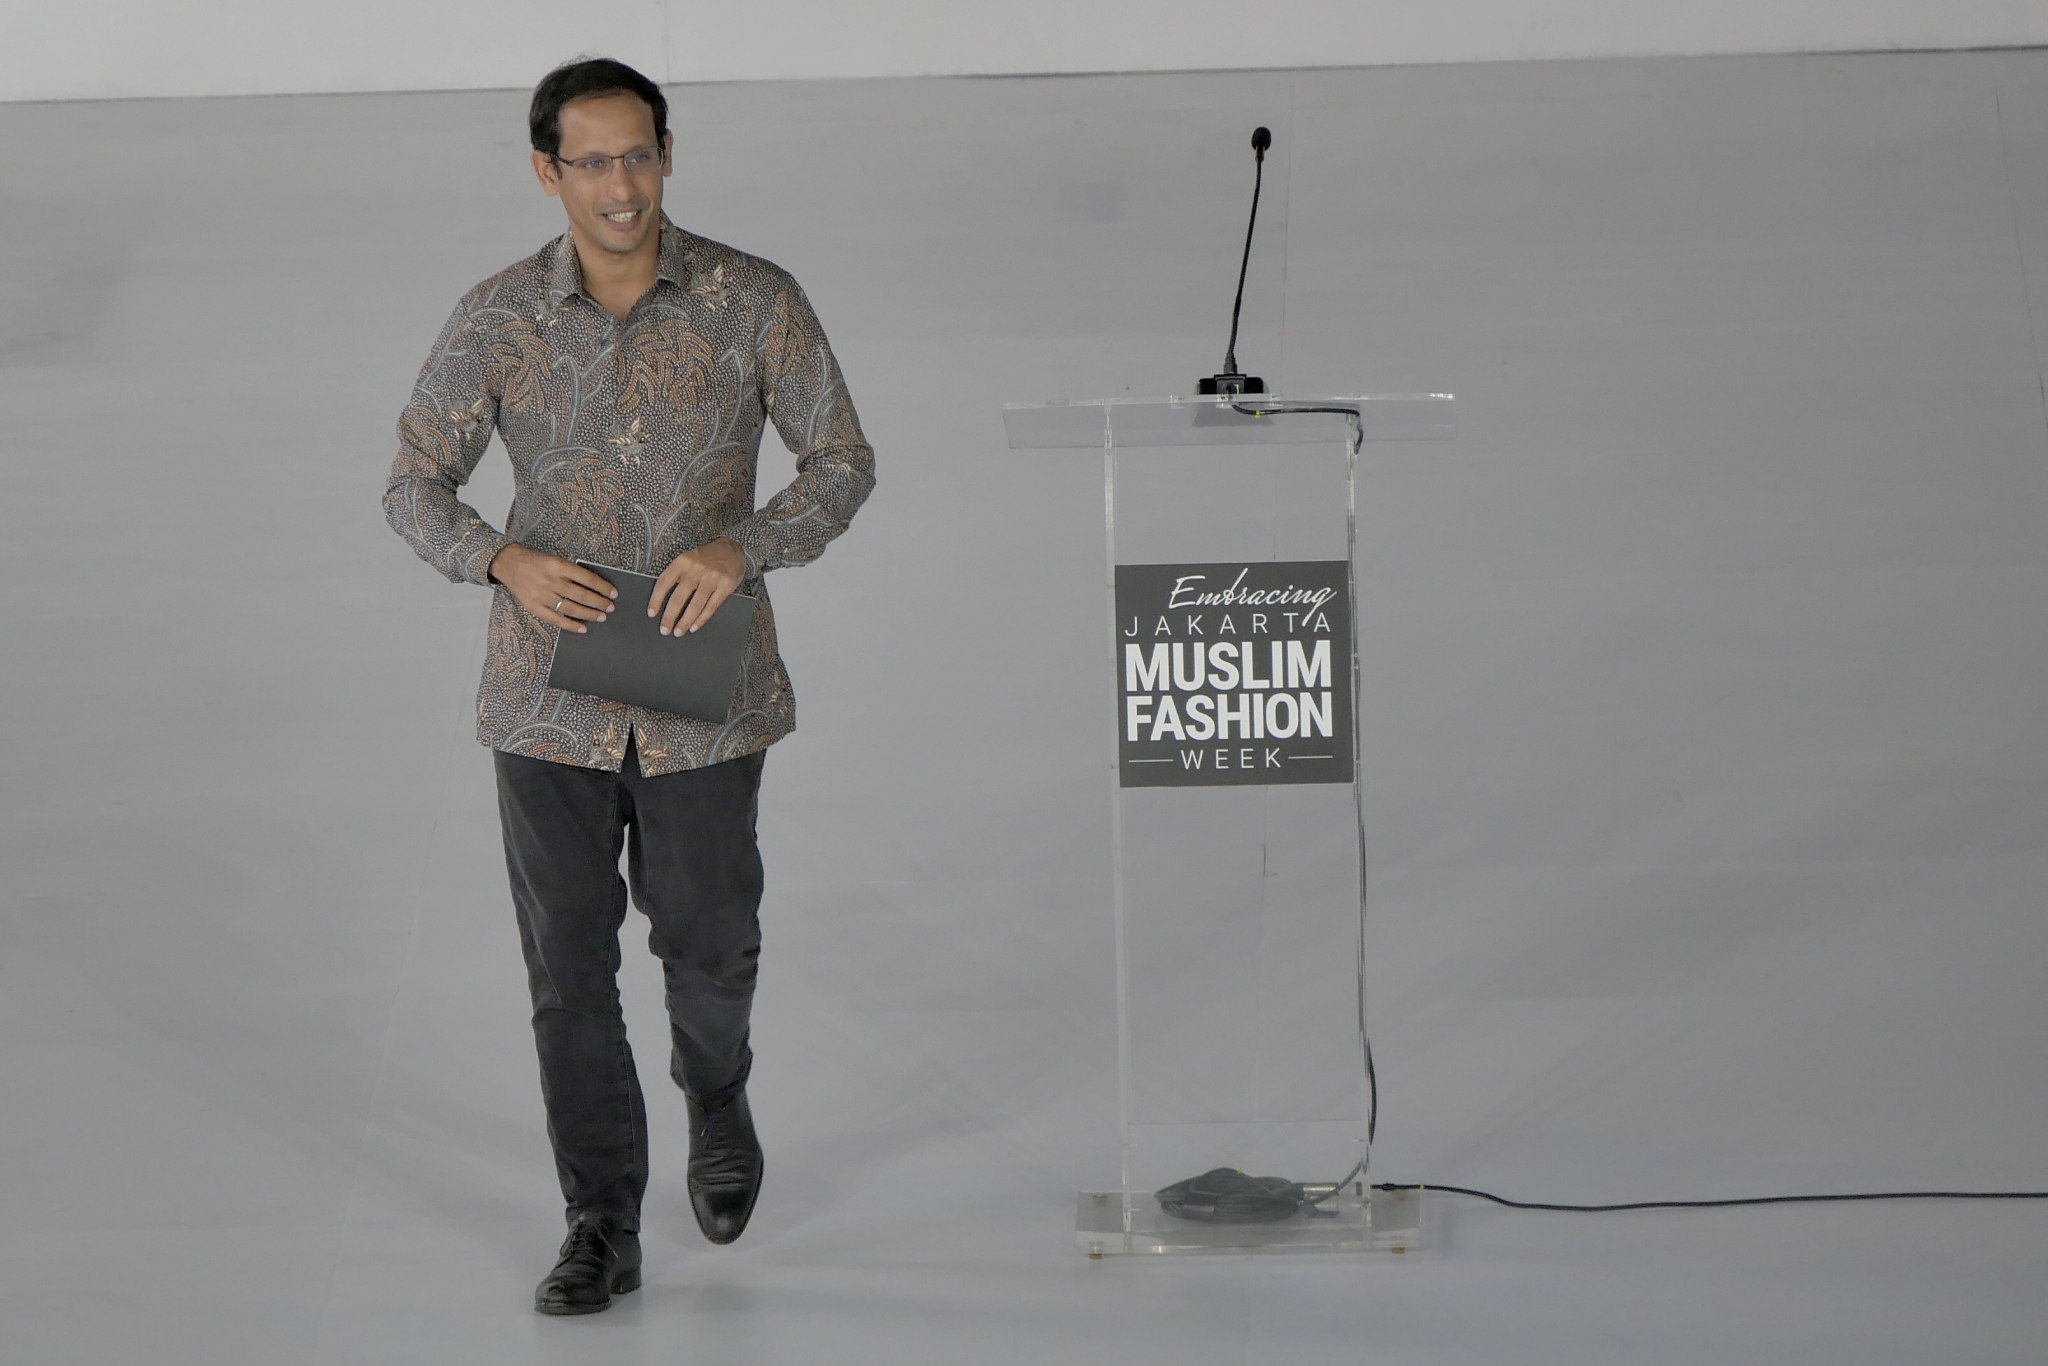 Menteri Pendidikan Budaya, Riset, dan Teknologi Nadiem Makarim usai membuka gelaran Embracing Jakarta Muslim Fashion Week di stadion Aquatic Gelora Bung Karno (GBK), Jakarta, Kamis, 18 November 2021. Foto: Ismail Pohan/TrenAsia